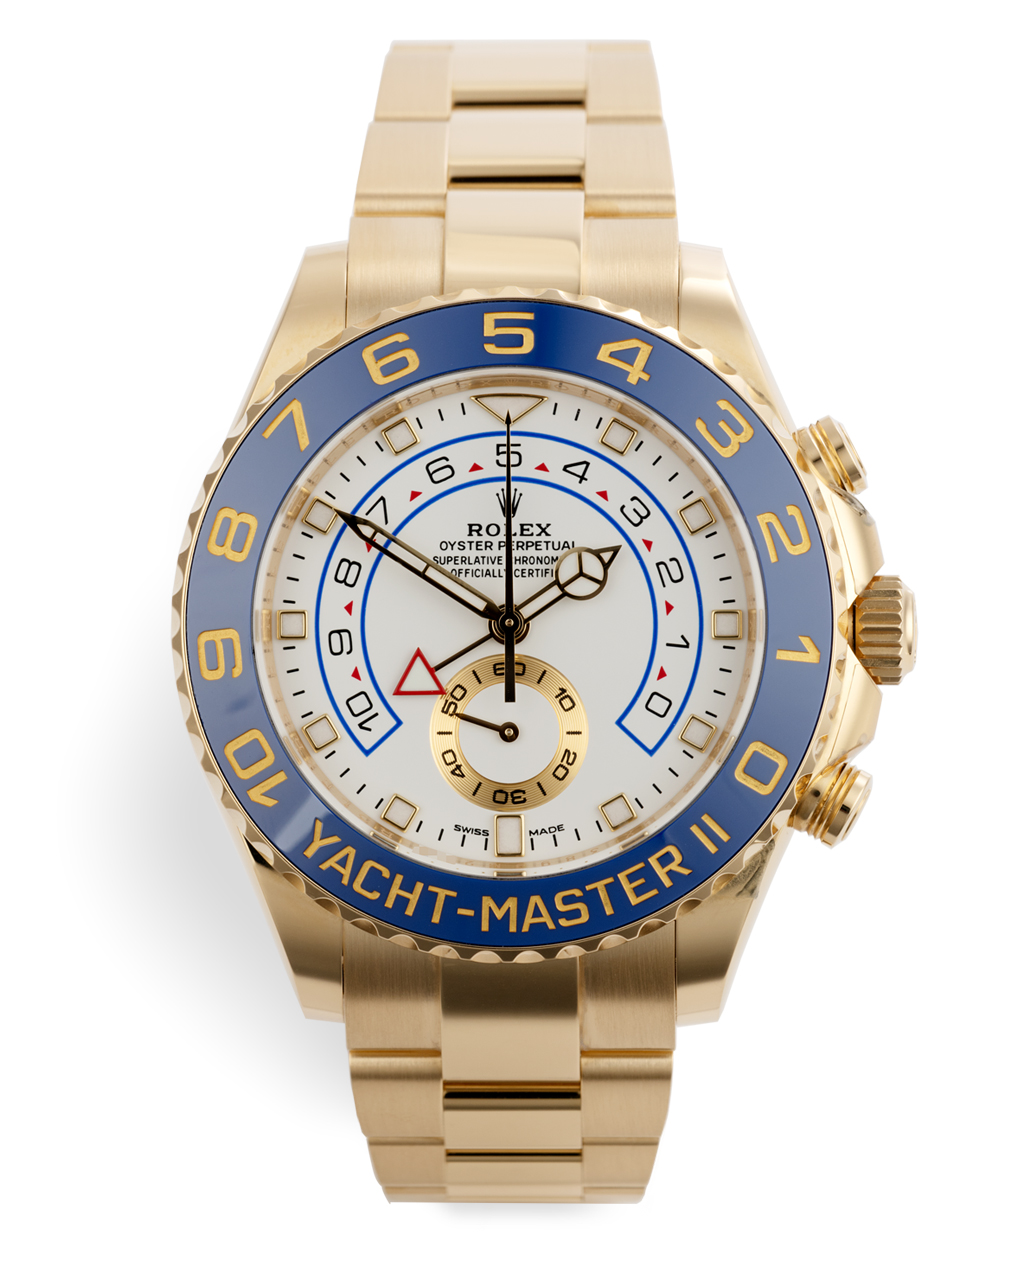 Rolex Yacht-Master II Watches | ref 116688 | Under Rolex Warranty | The ...